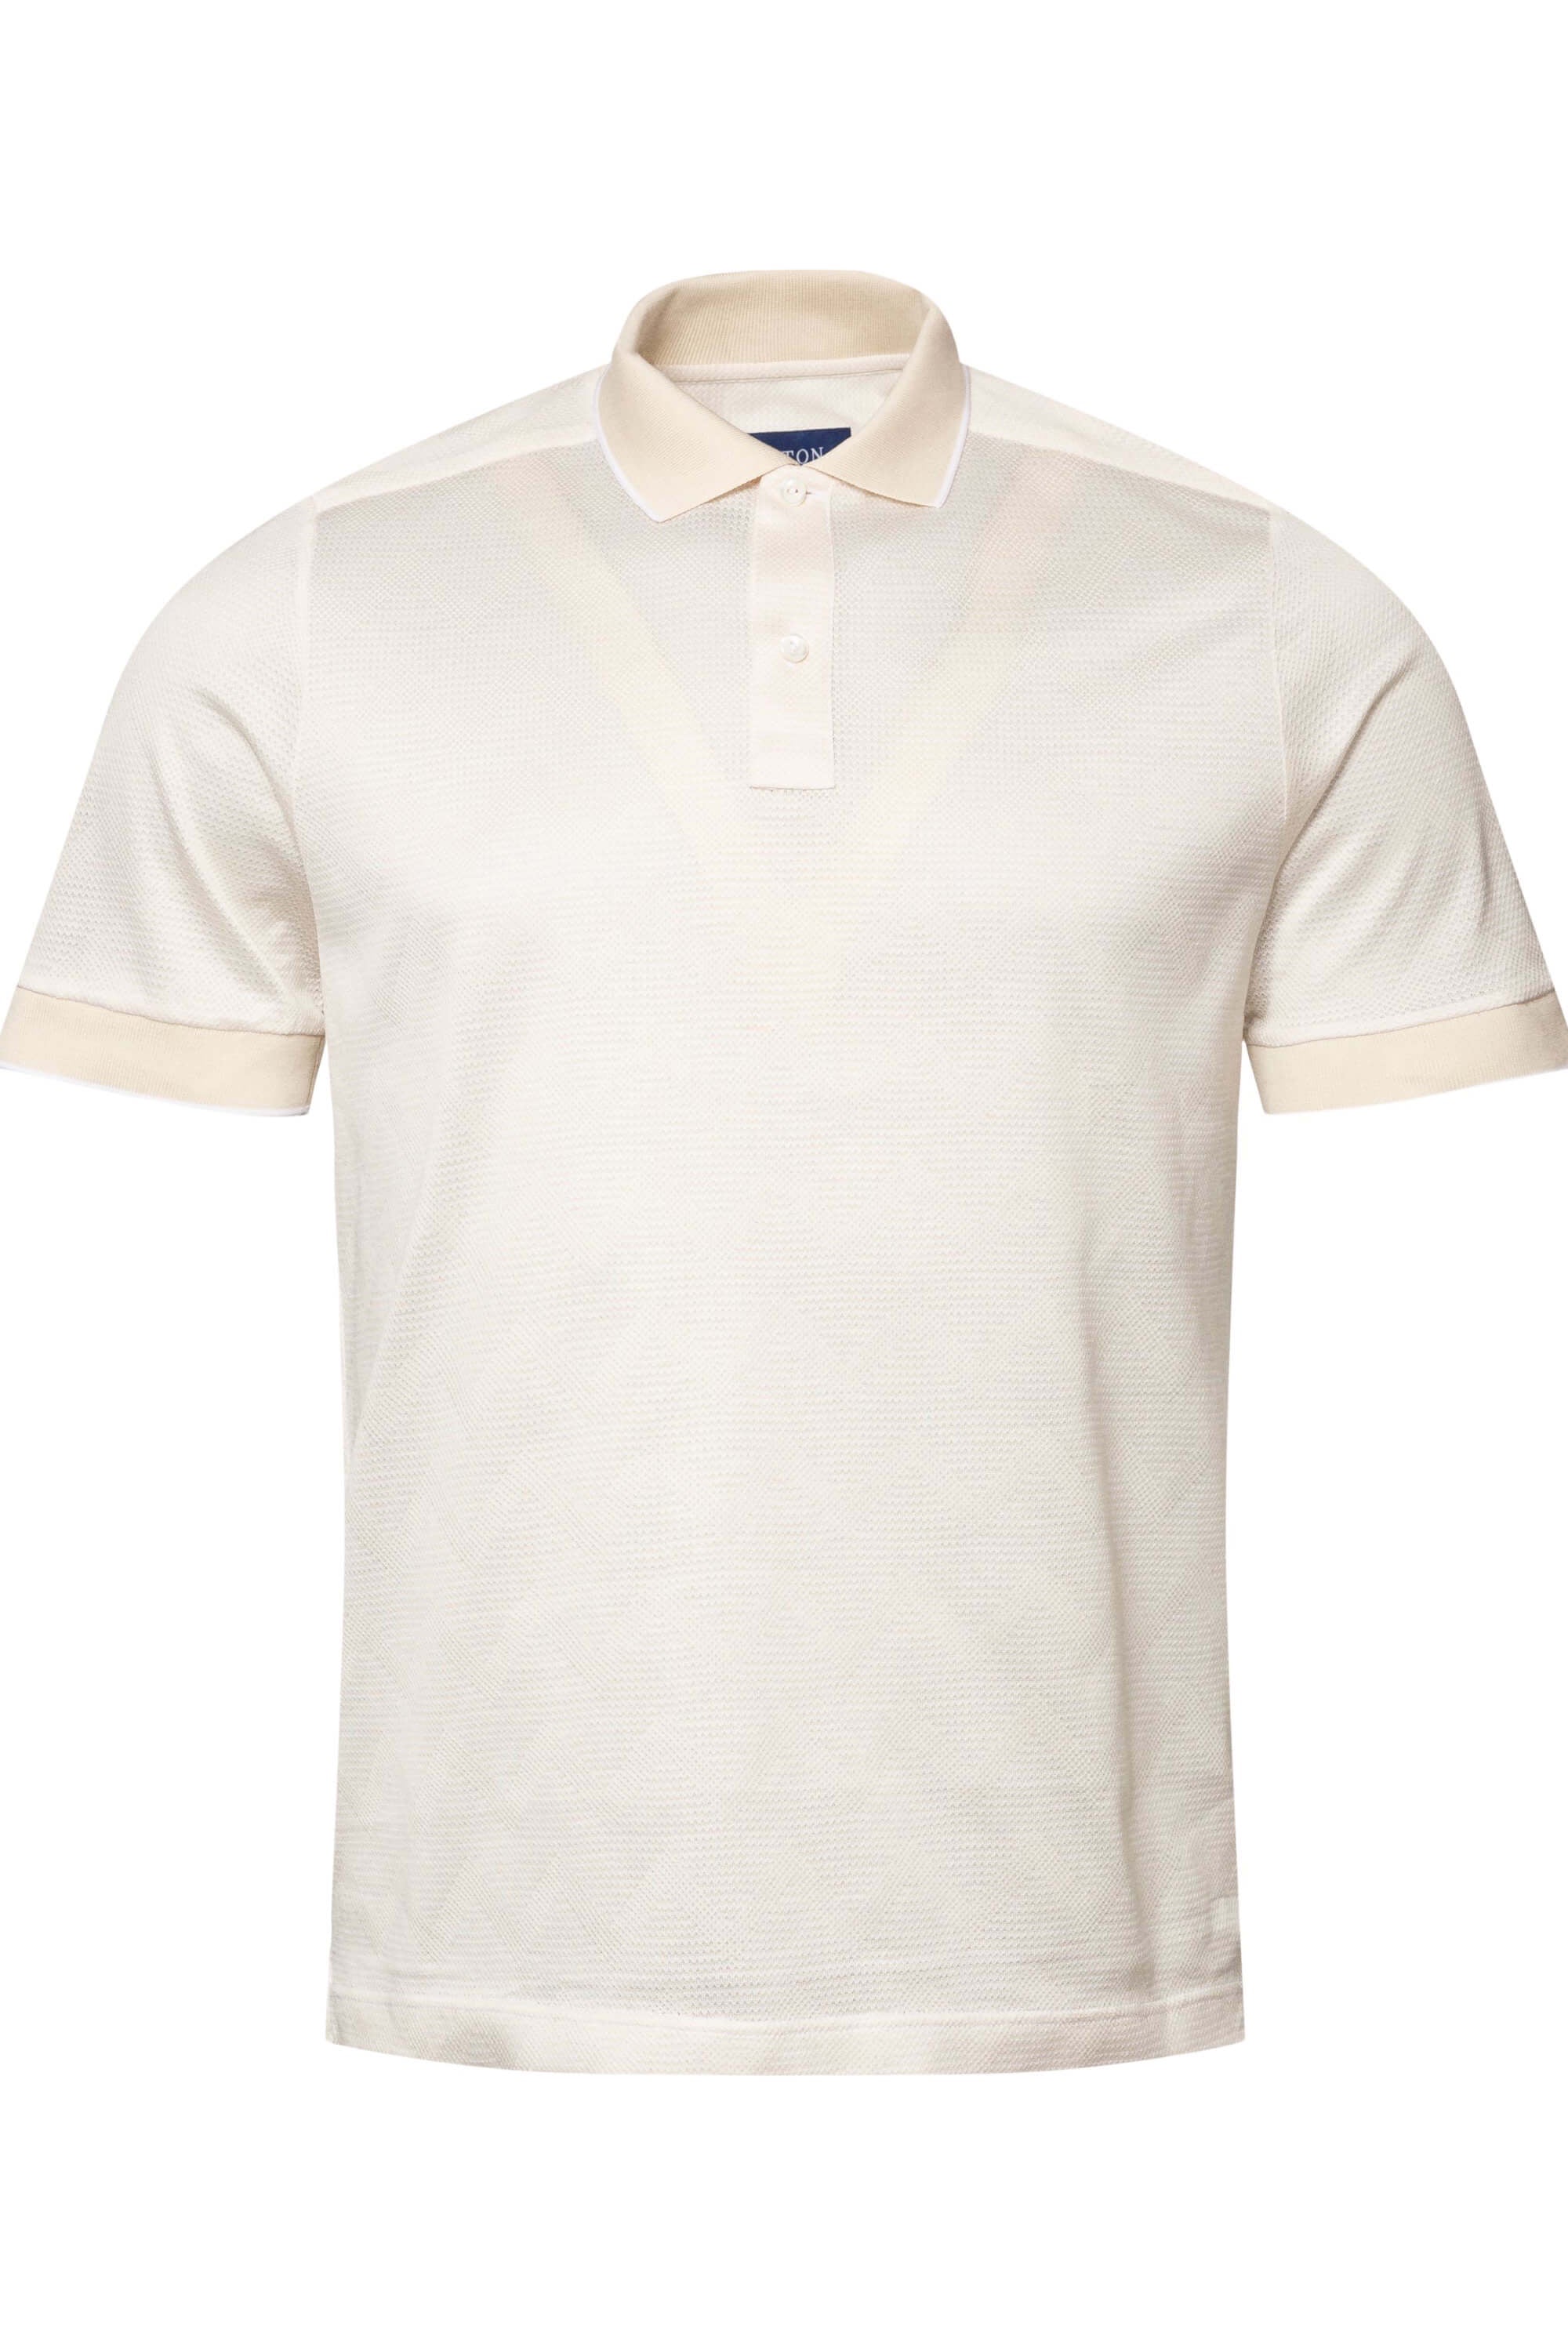 Eton White Knit Collar Polo Shirt